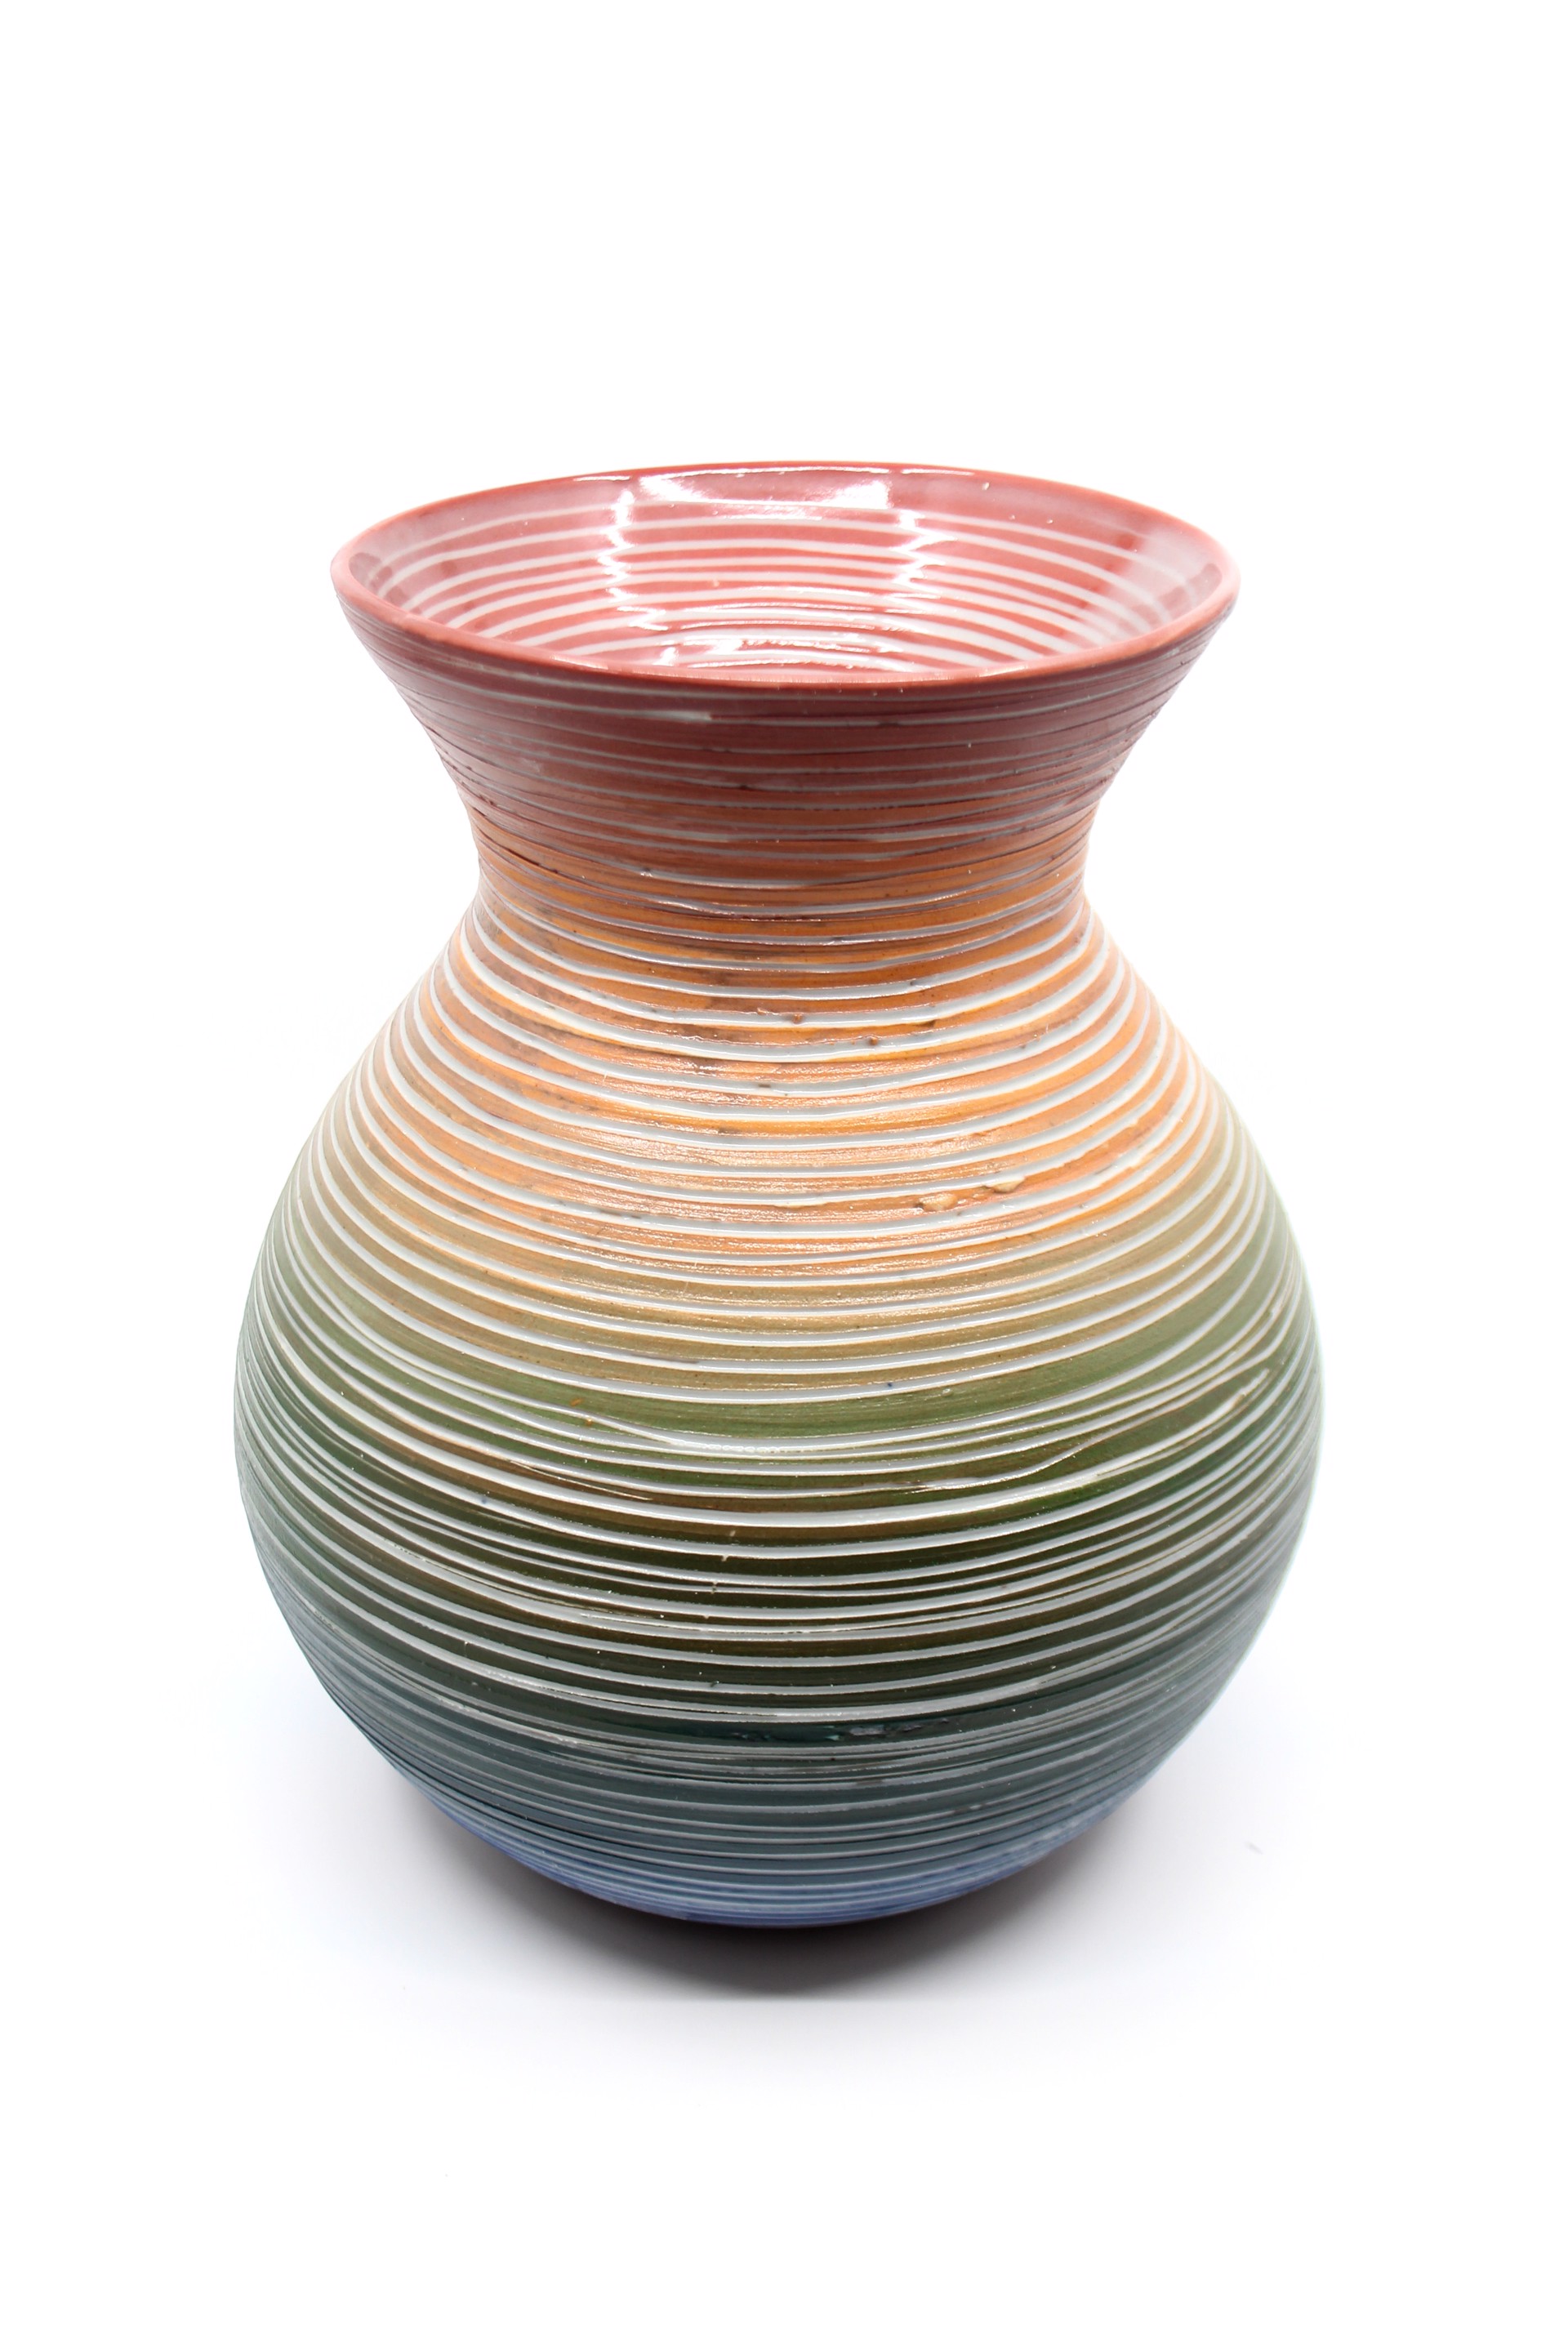 ROYGBIV Vase by Heather Bradley